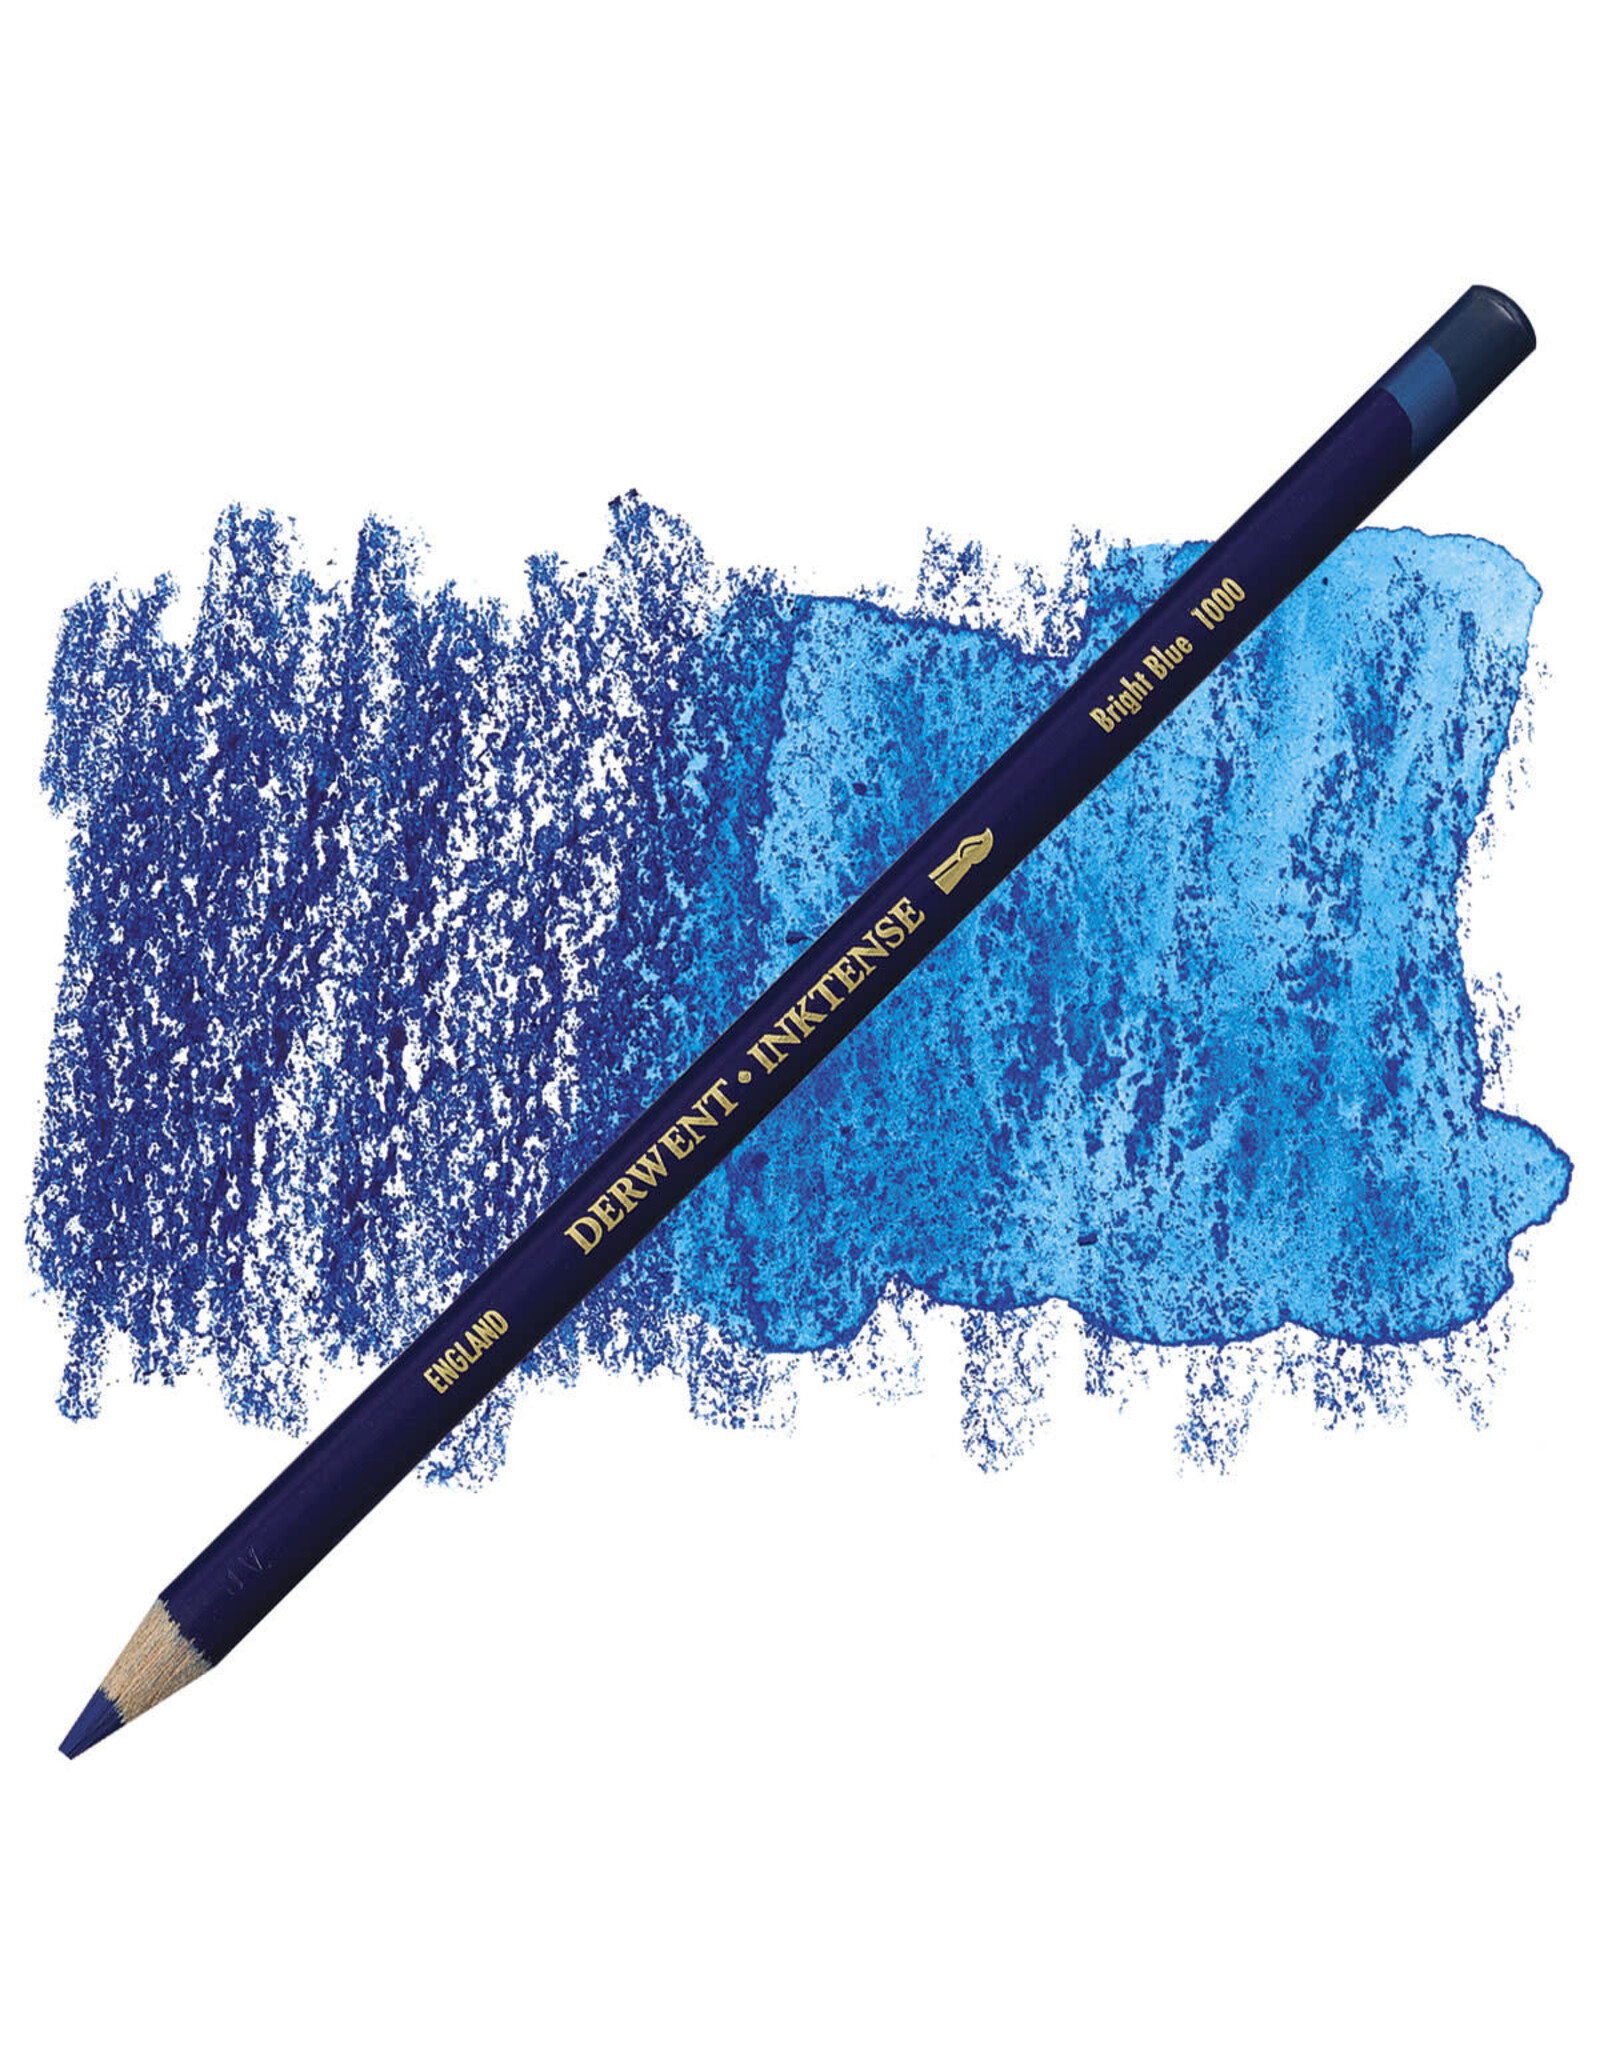 DERWENT INKTENSE PENCIL - BRIGHT BLUE